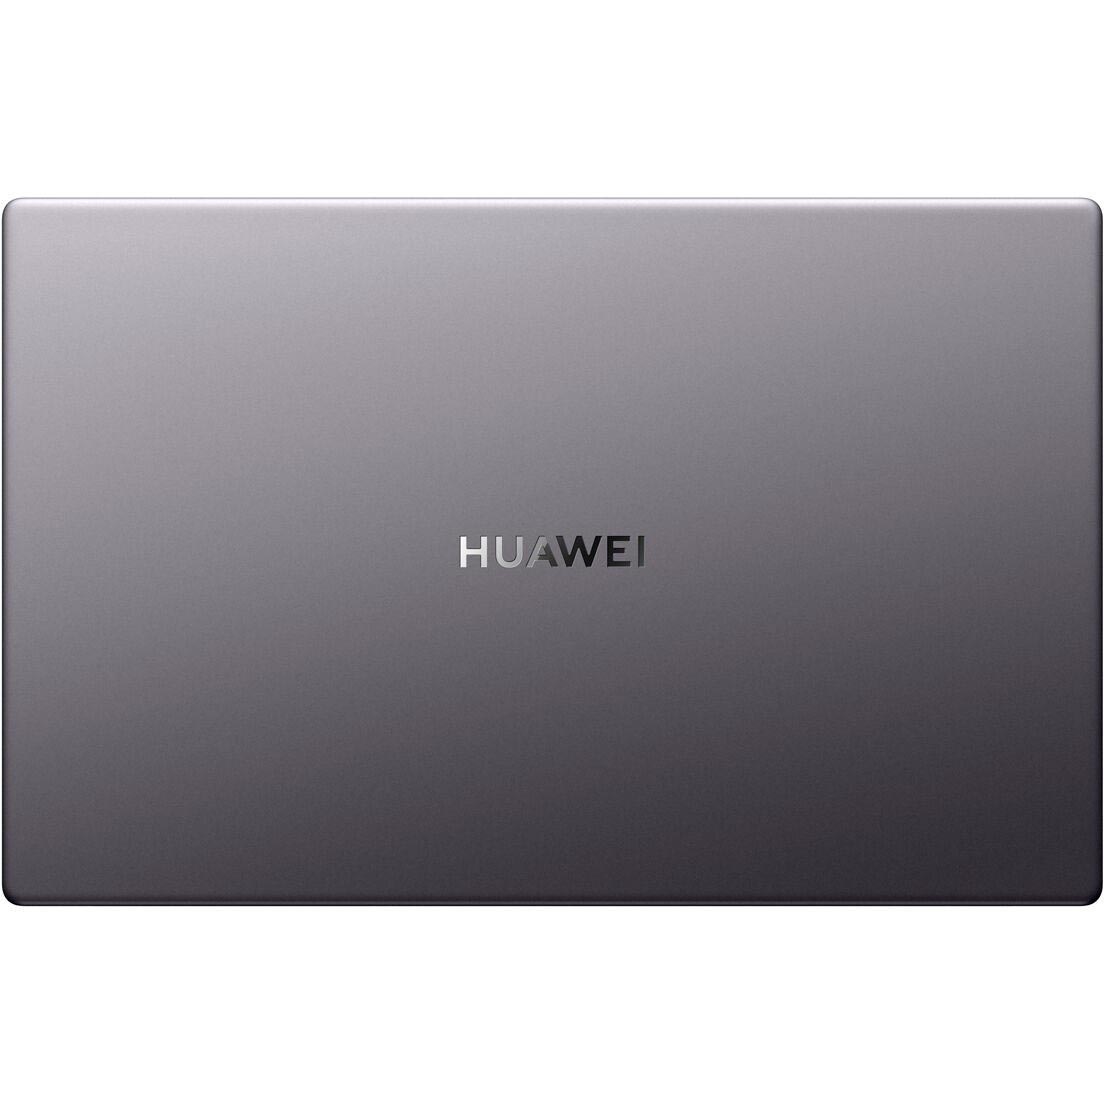 Asus vivobook 15 12500h. Ноутбук Huawei MATEBOOK d15 bod wdi9. Ноутбук ASUS x540ma-gq035. Ноутбук Huawei MATEBOOK D 14 NBM-wdq9 8+512gb Space Grey. Ультрабук Huawei MATEBOOK D 14.